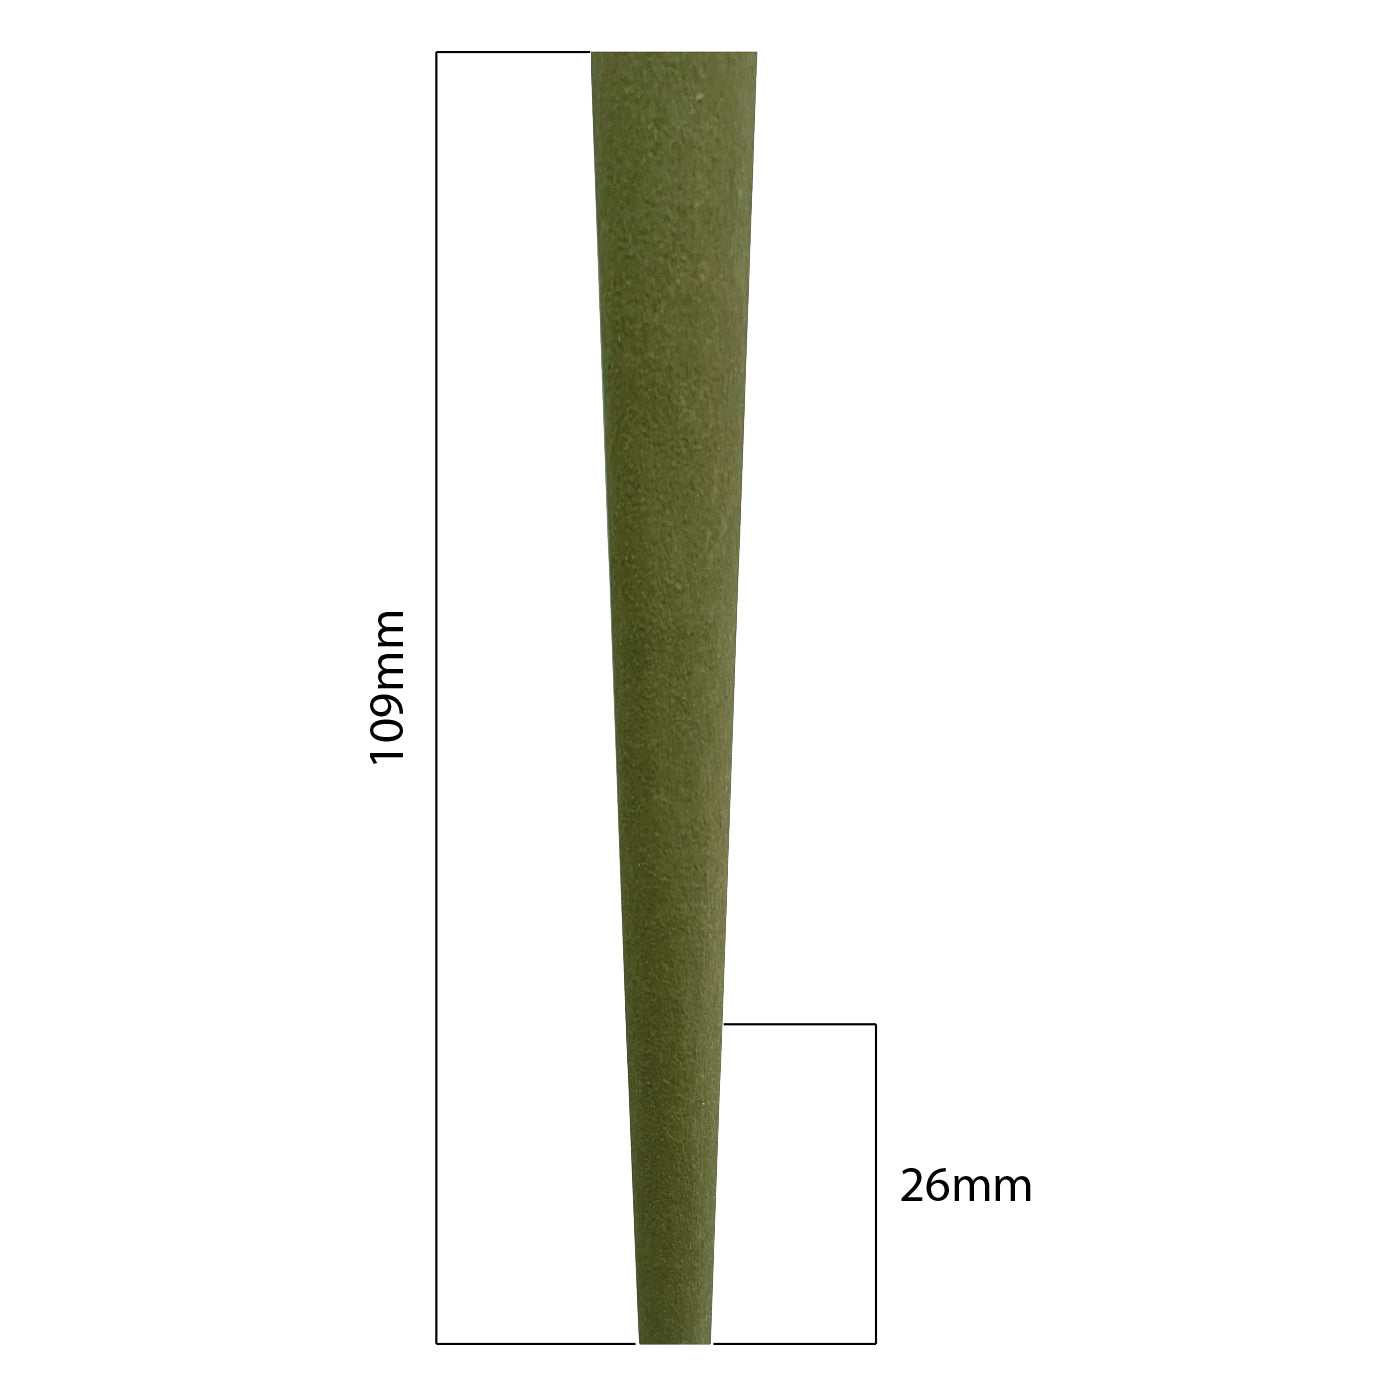 Cones (Green Hemp): 109mm